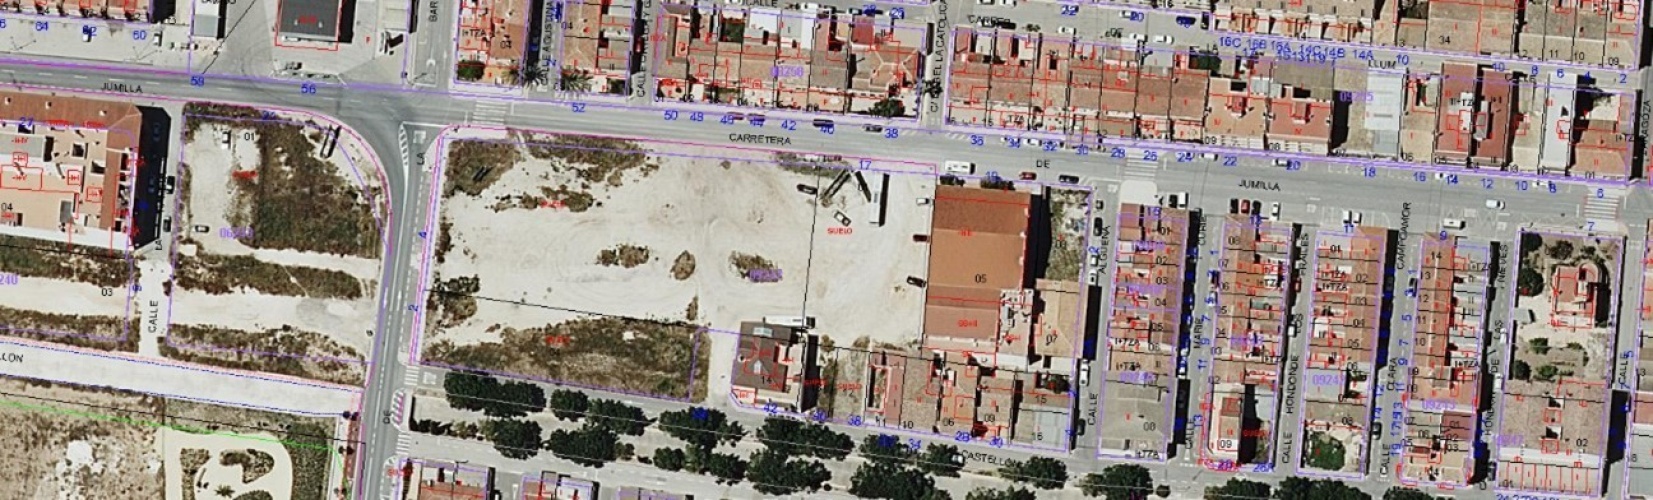 Pinoso Area,Parcelas para construir / Building plots,2189